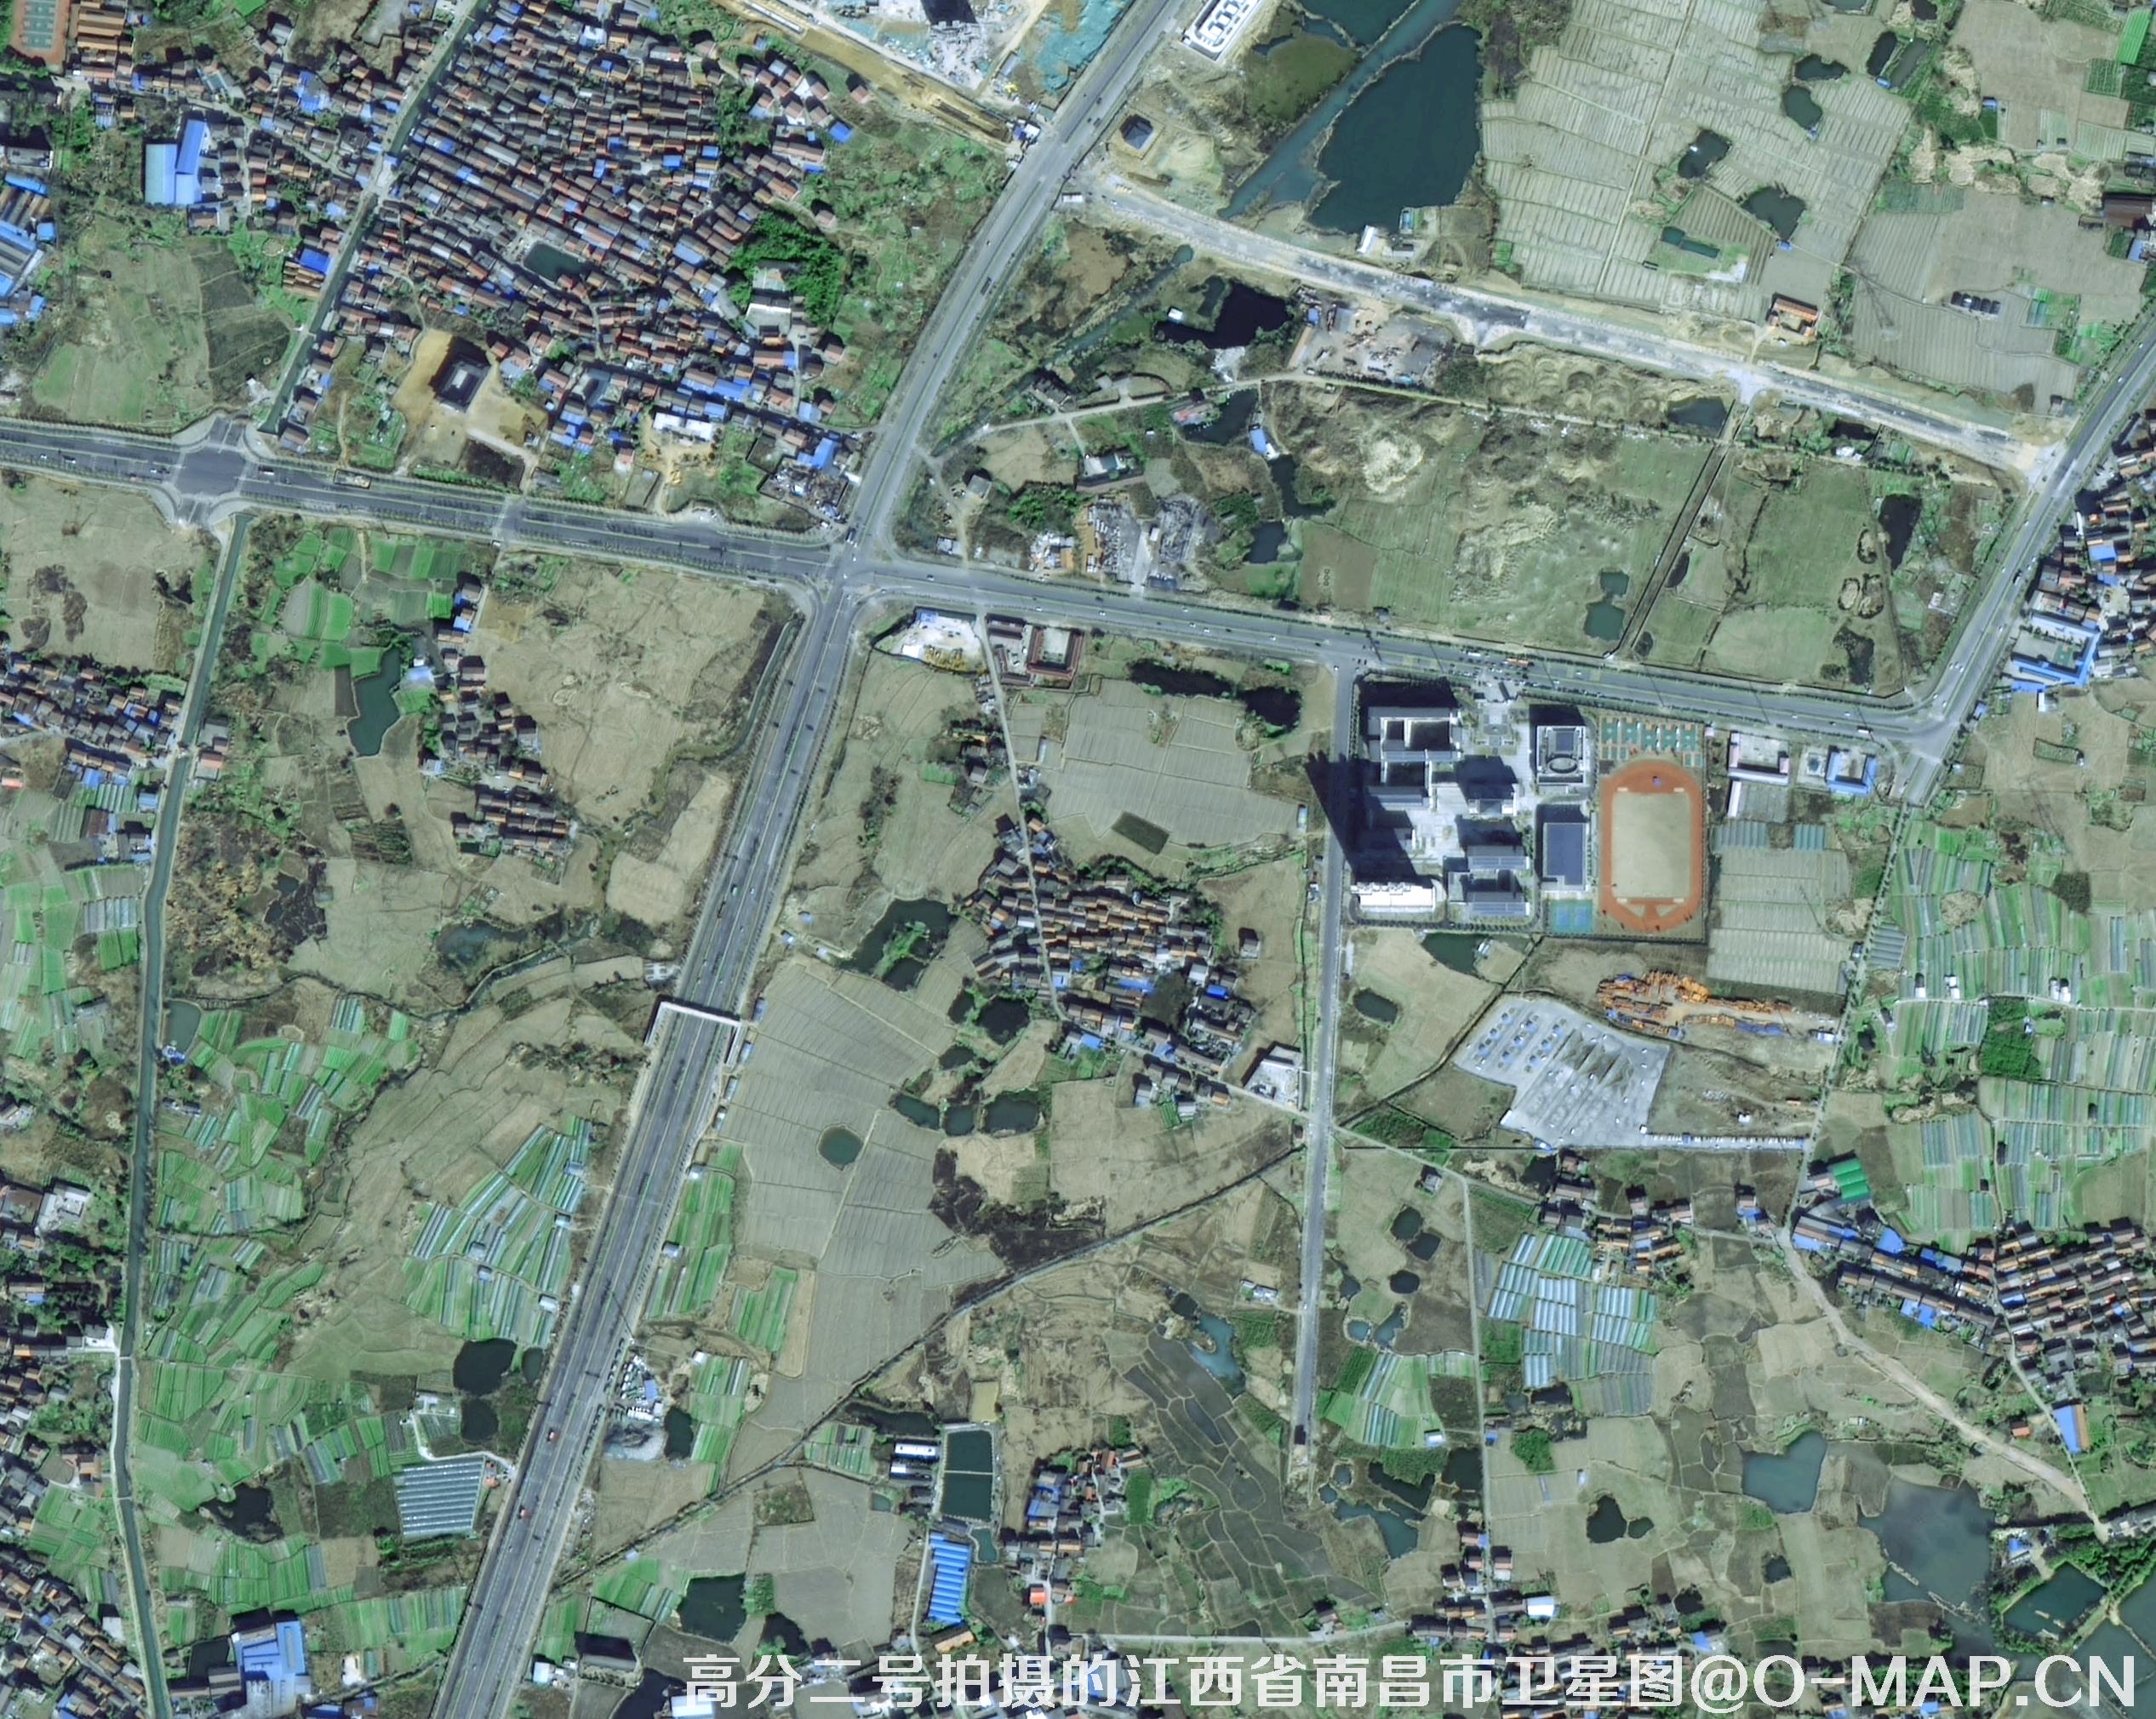 0.8米分辨率卫星拍摄的高清图片